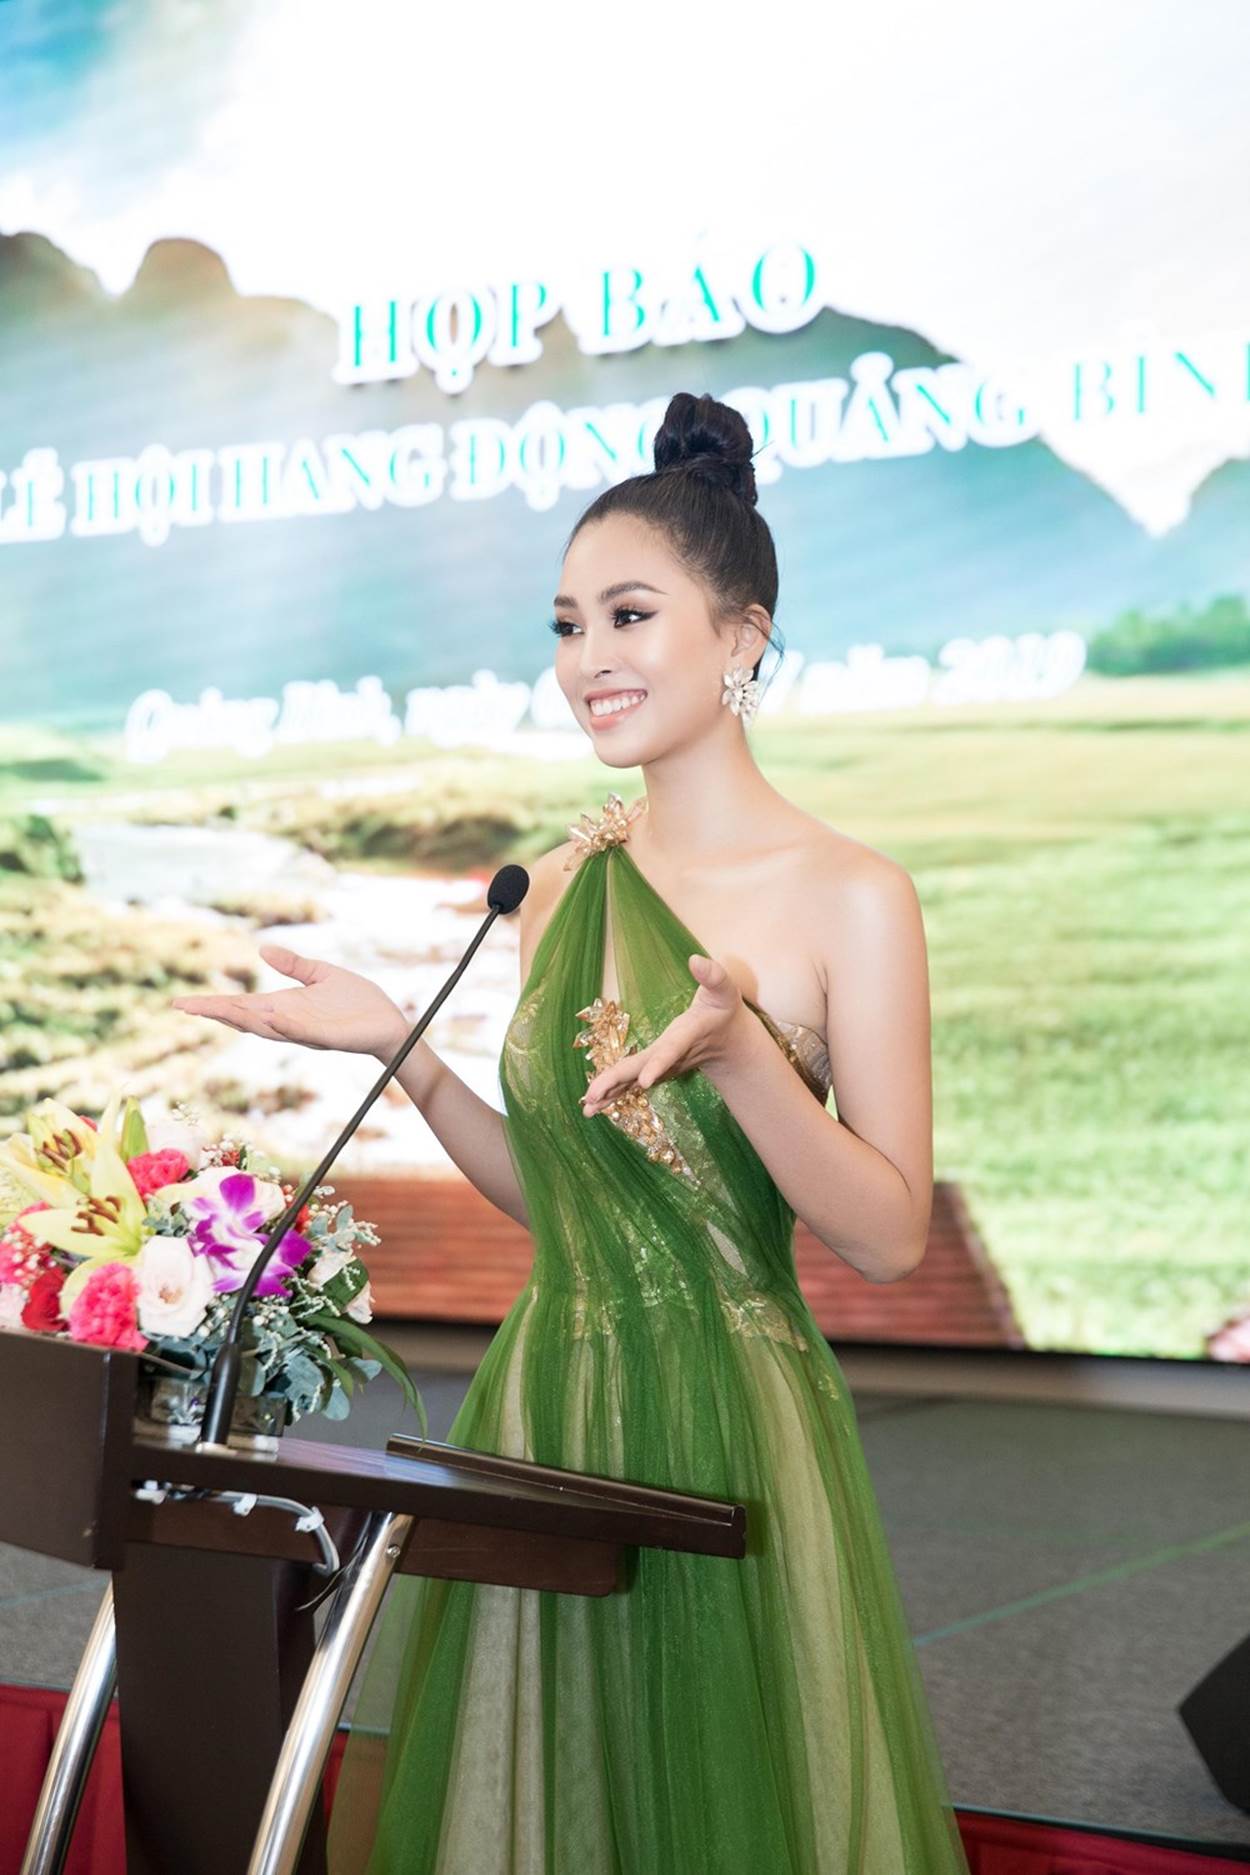  Xuất hiện tại buổi họp báo Lễ hội hang động Quảng Bình, Hoa hậu Tiểu Vy chiếc đầm lệch vai của nhà thiết kế Tâm Lâm, nụ cười rạng rỡ cùng nhan sắc nữ thần của nàng hậu luôn khiến người xung quanh khó có thể rời mắt. (Ảnh: Viết Quý/Vietnam+)